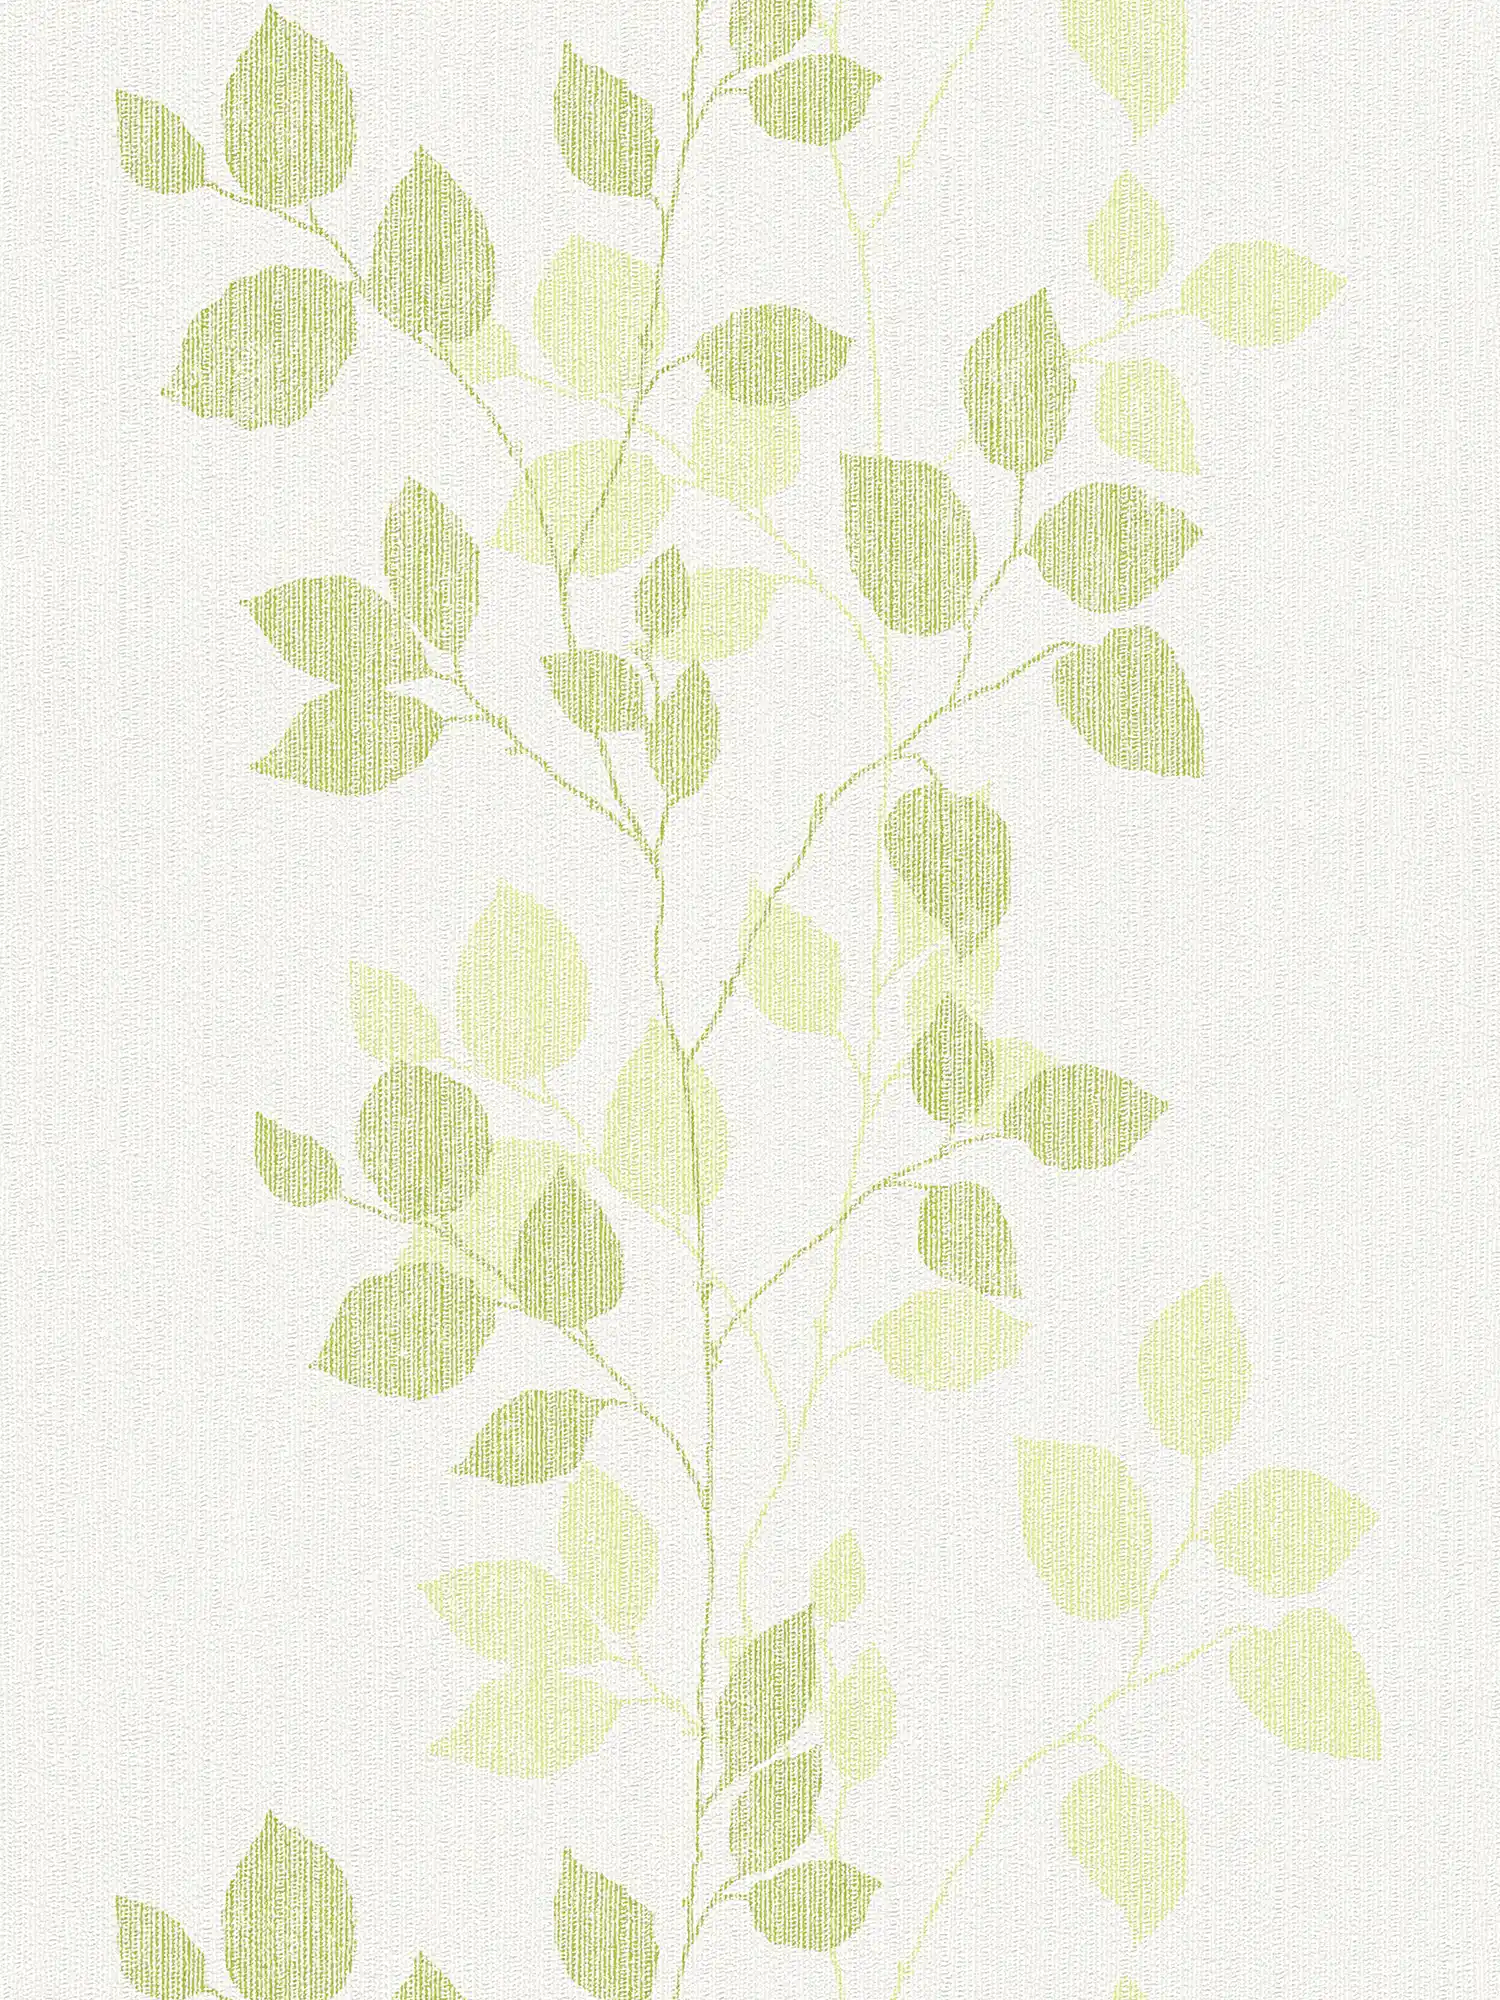 Patroonbehang bladeren in lentekleuren - groen, wit
